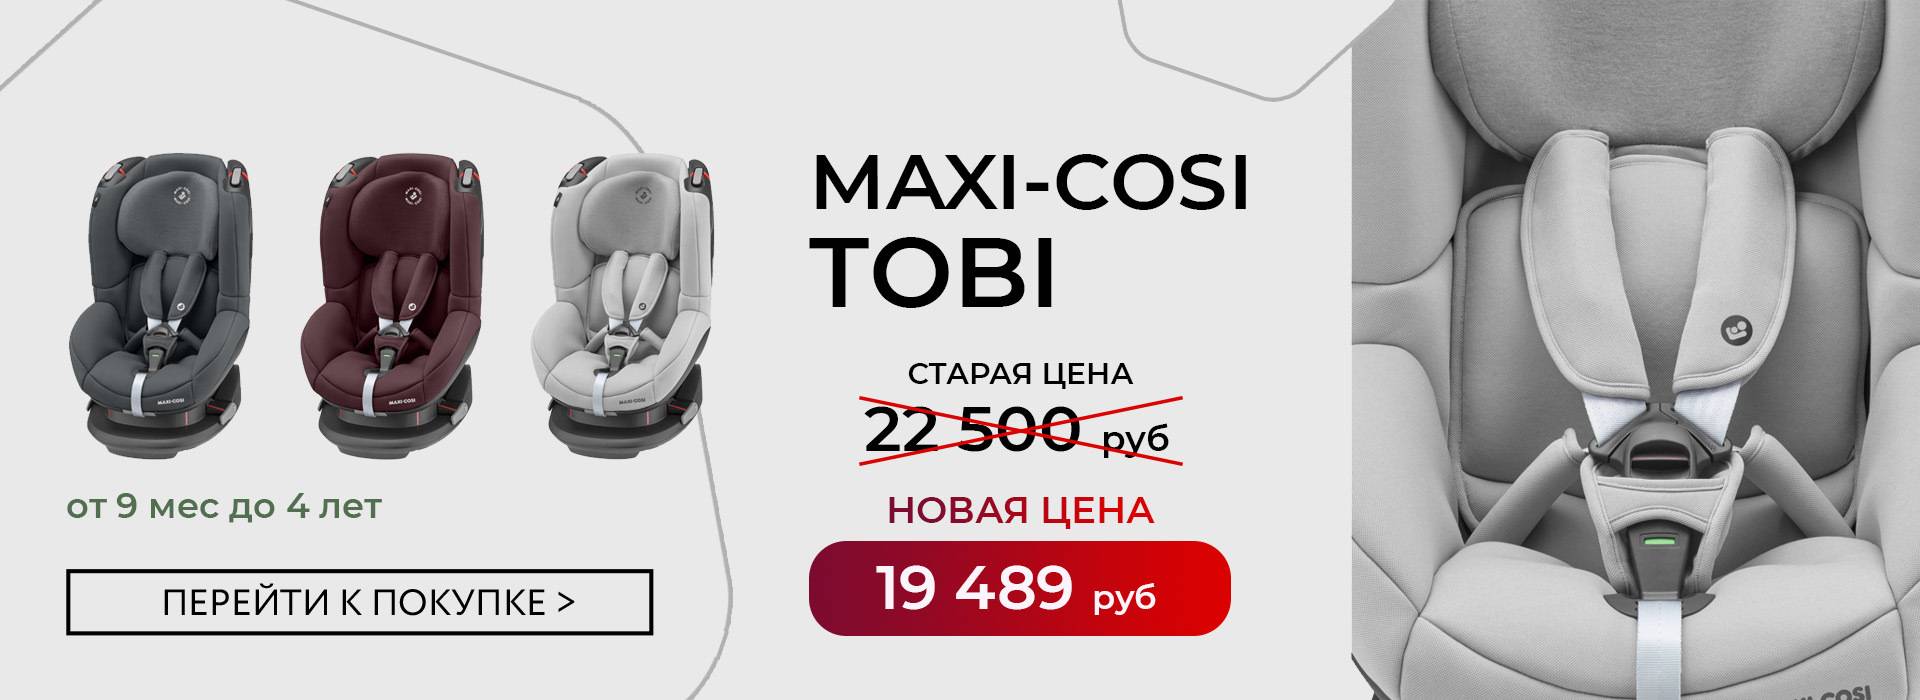 Что выбрать maxi cosi tobi или maxi cosi axiss? у axiss кресло поворачивается на 90 градусов. нужно ли это по факту вообще?